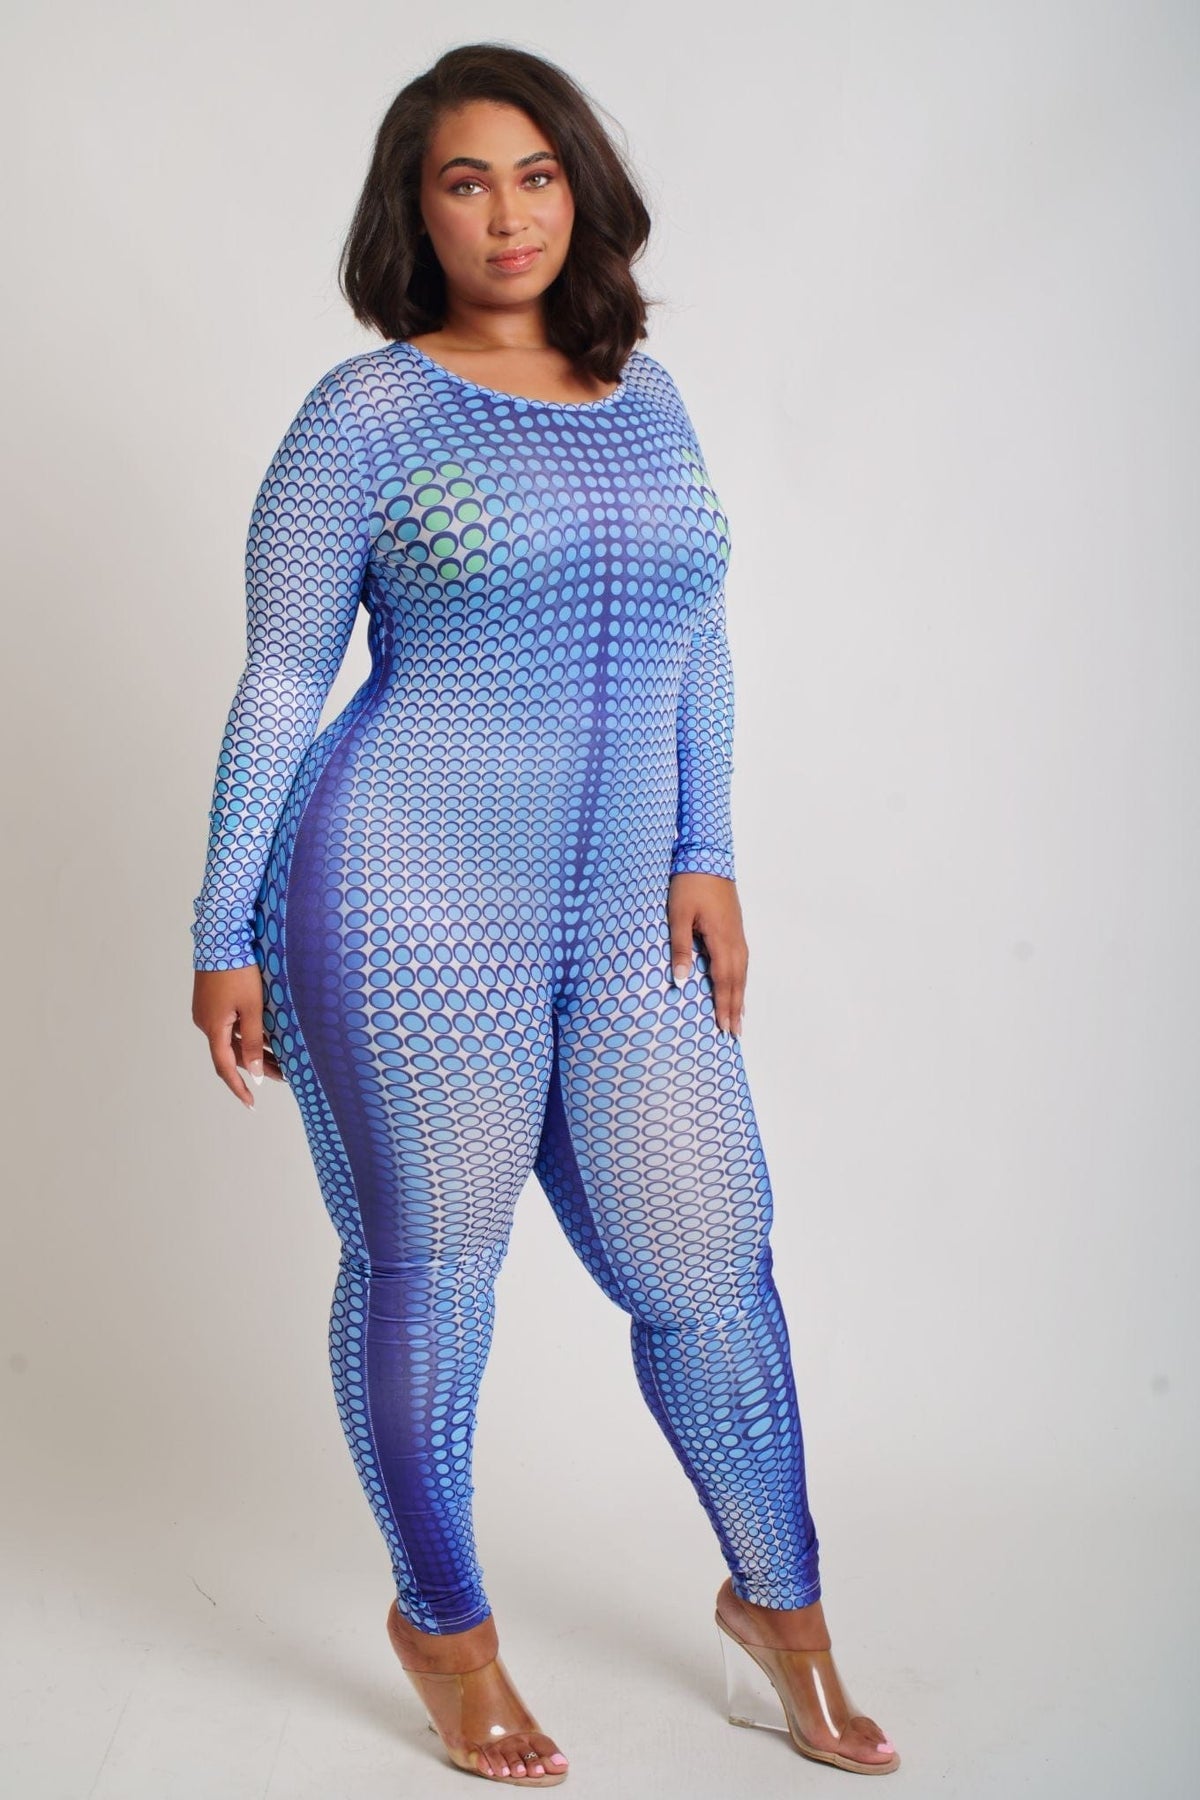 Aqua Dream Bodysuit